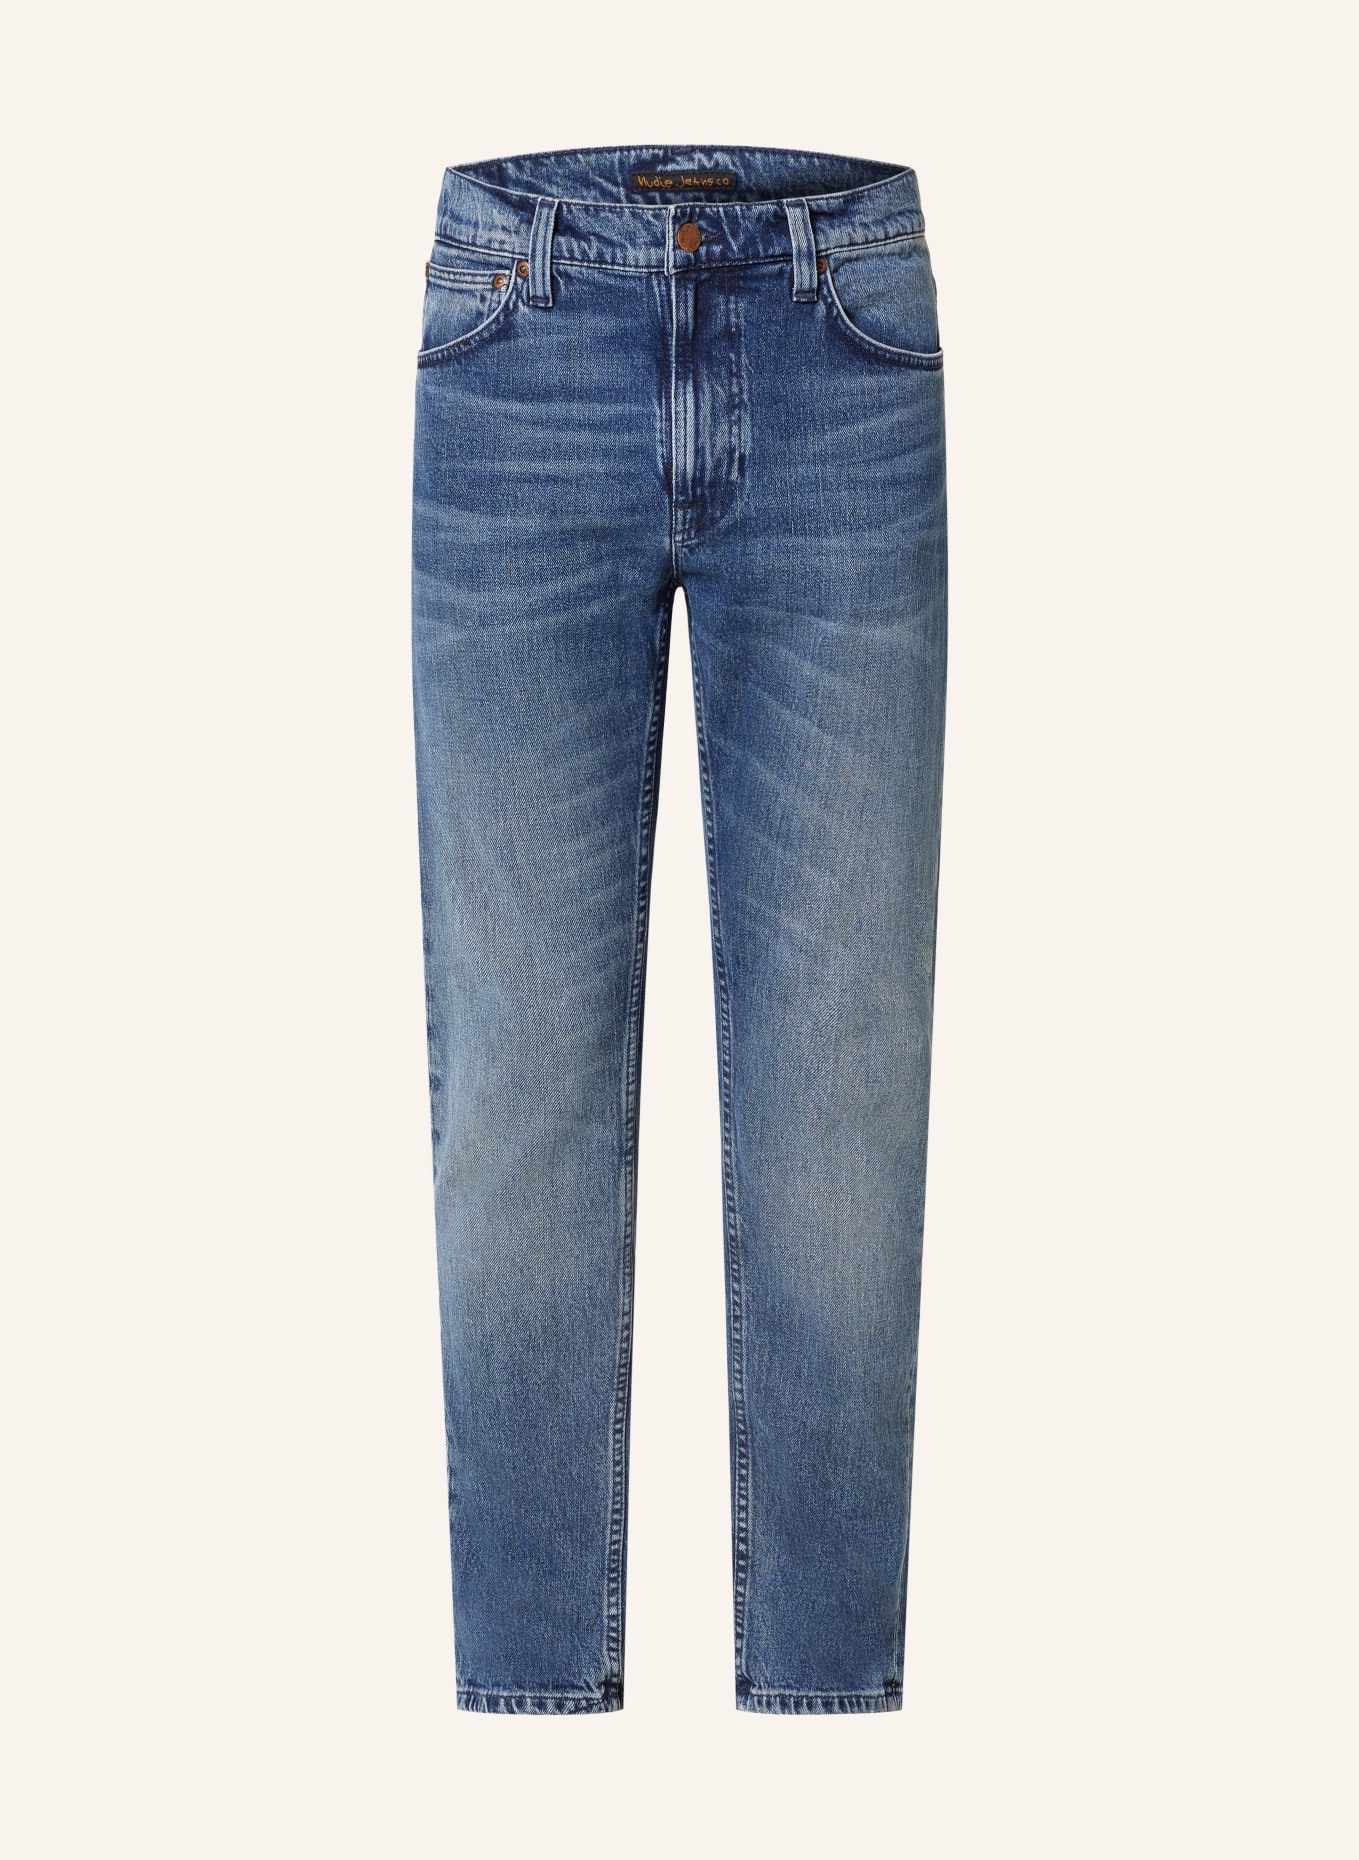 Nudie Jeans Jeans LEAN DEAN Slim Fit, Farbe: INDIGO INK (Bild 1)